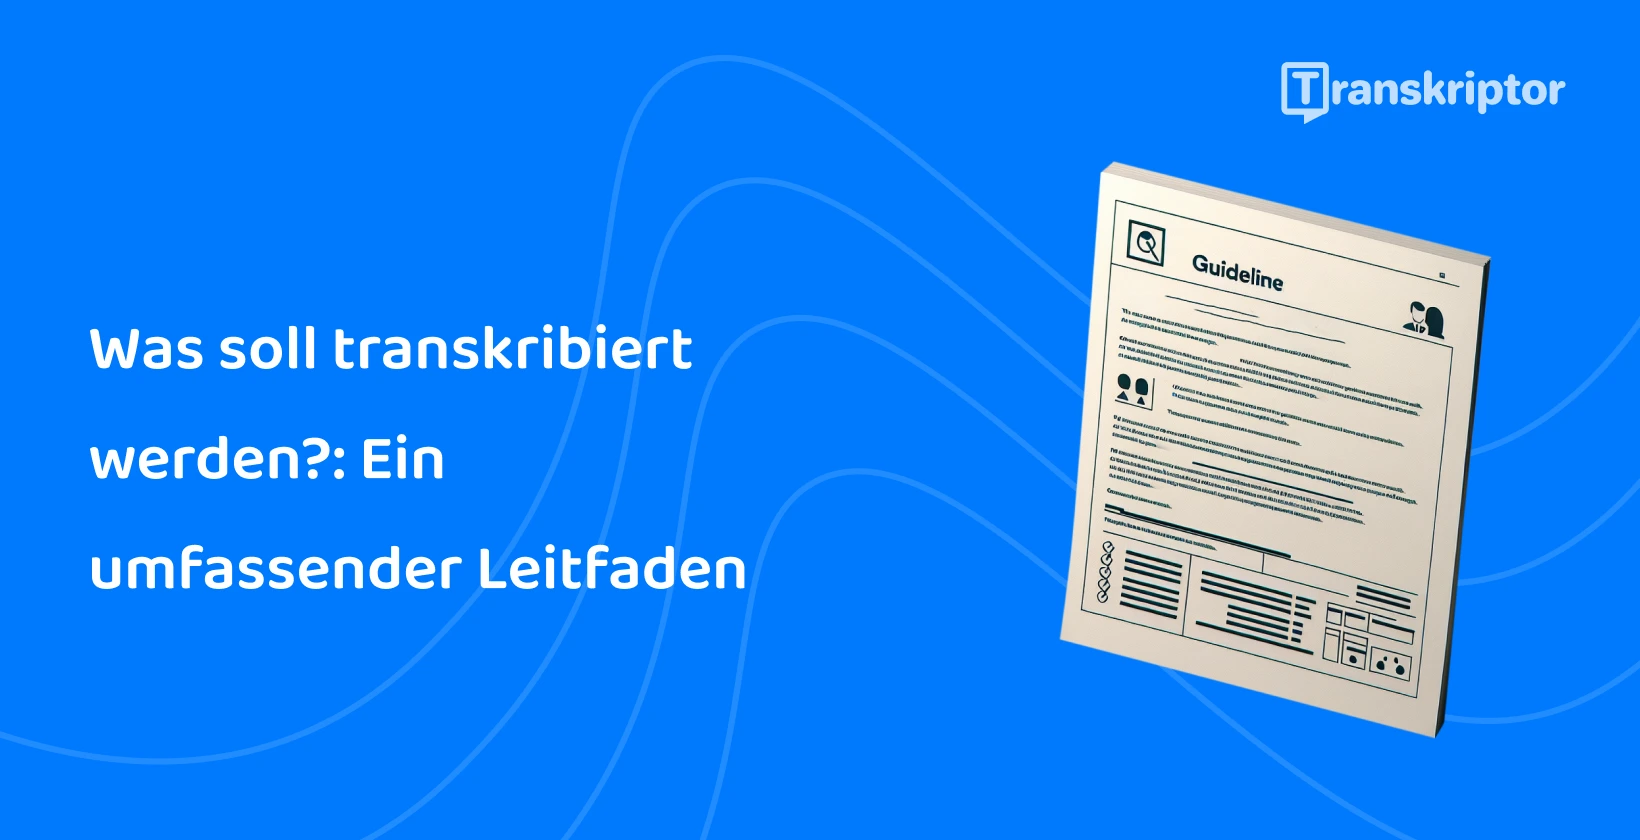 Eine digitale Zwischenablage mit Transkriptionsrichtlinien vor blauem Hintergrund.